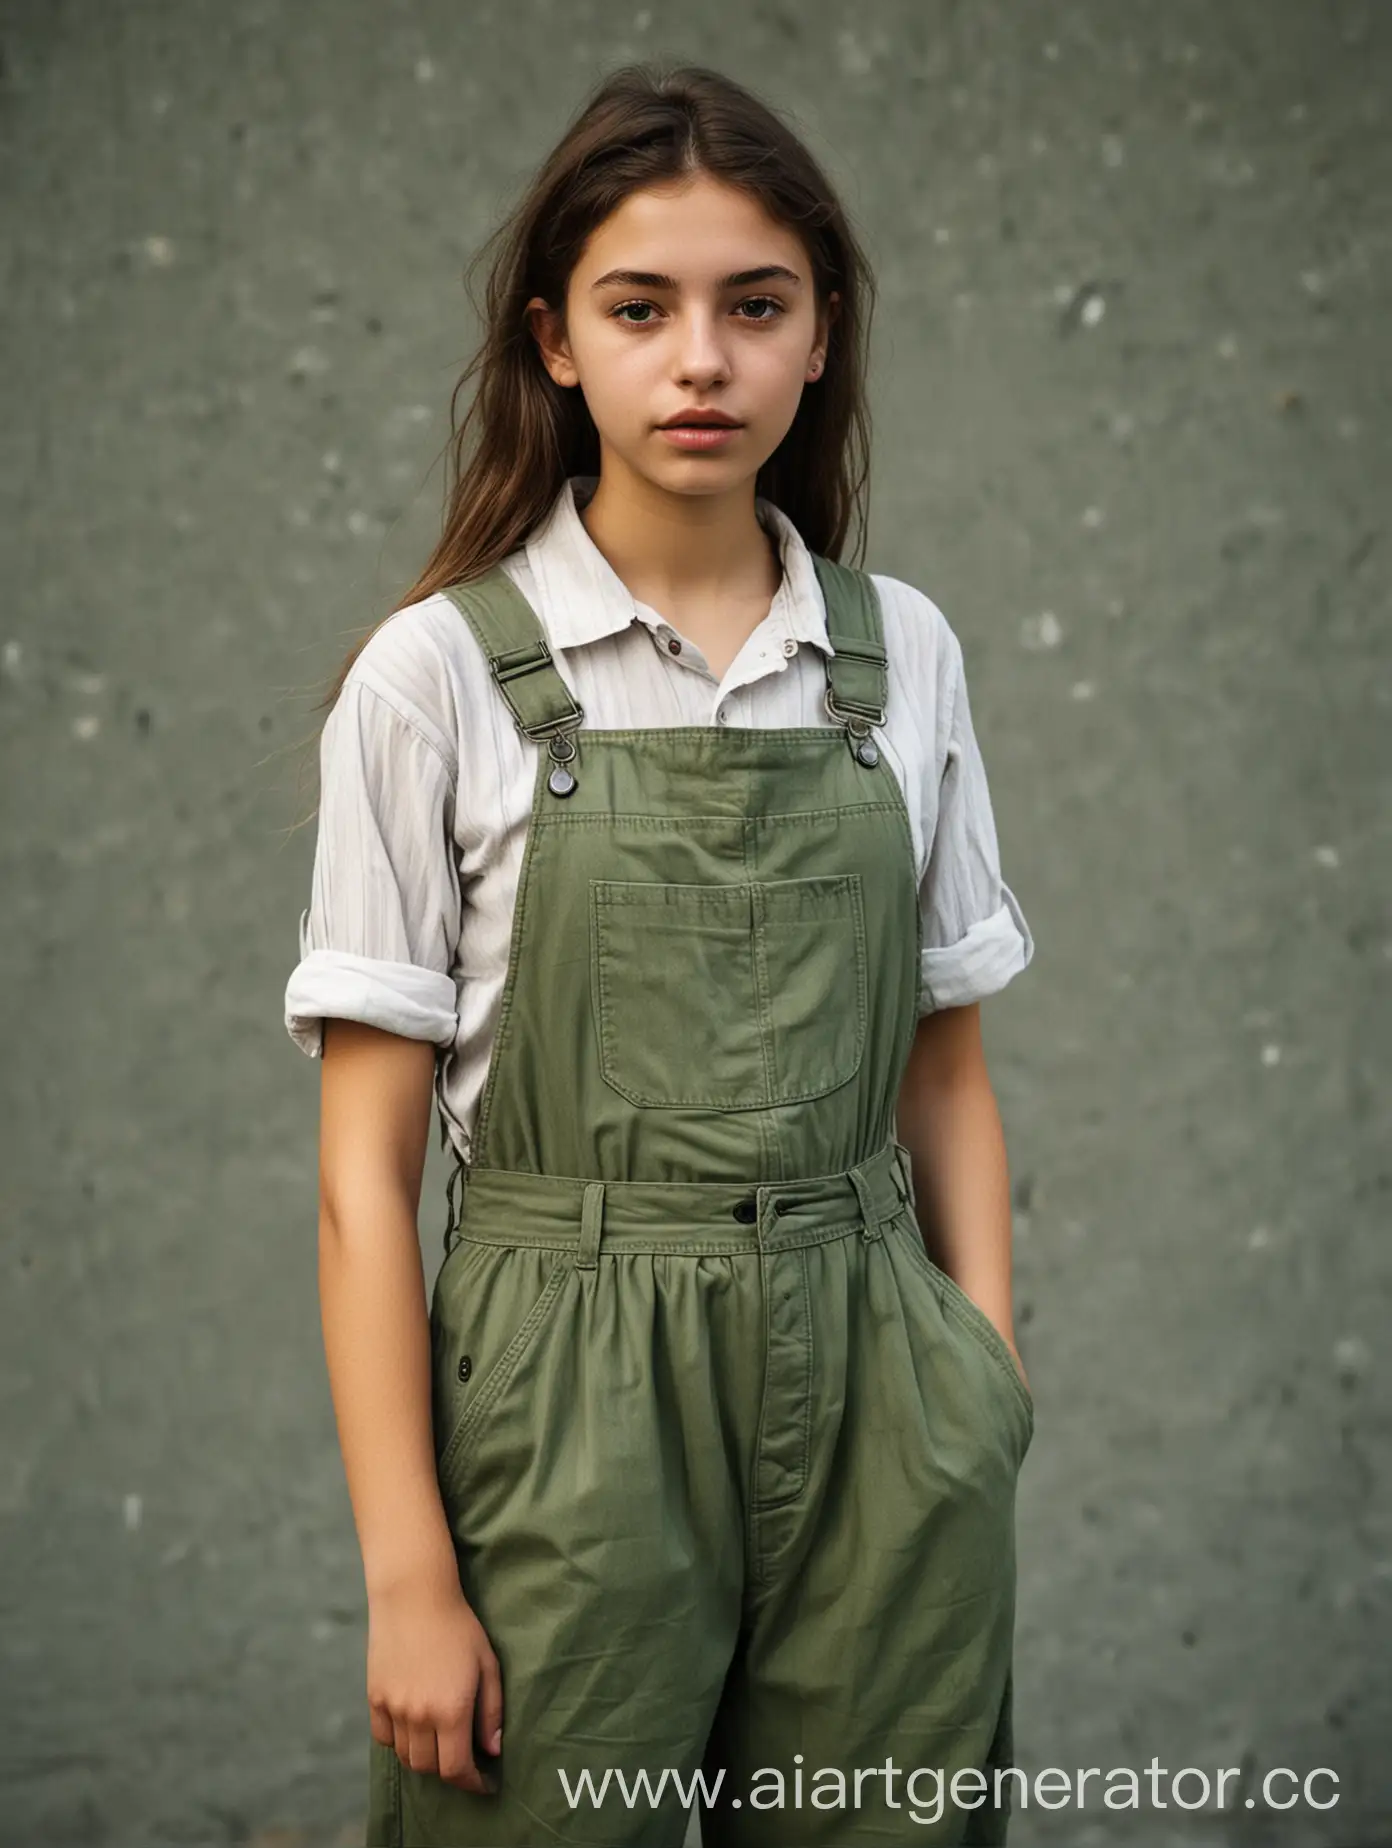 EcoActivist-Fashion-Stylish-21YearOld-Girl-Promoting-Sustainability